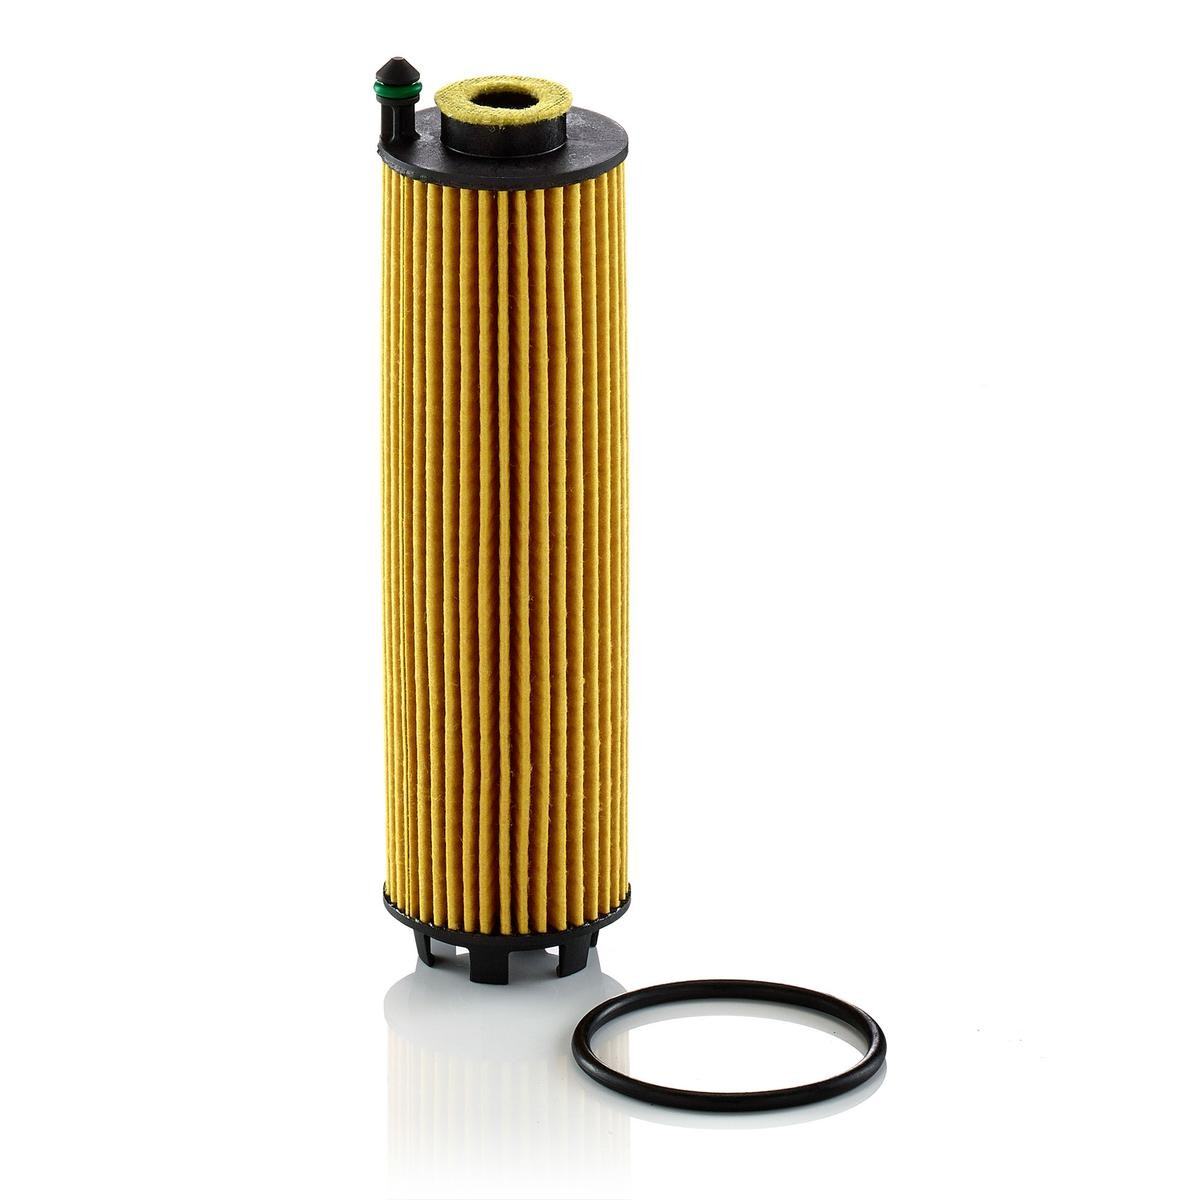 Original MANN-FILTER Oil filter HU 6028 z for MERCEDES-BENZ SPRINTER